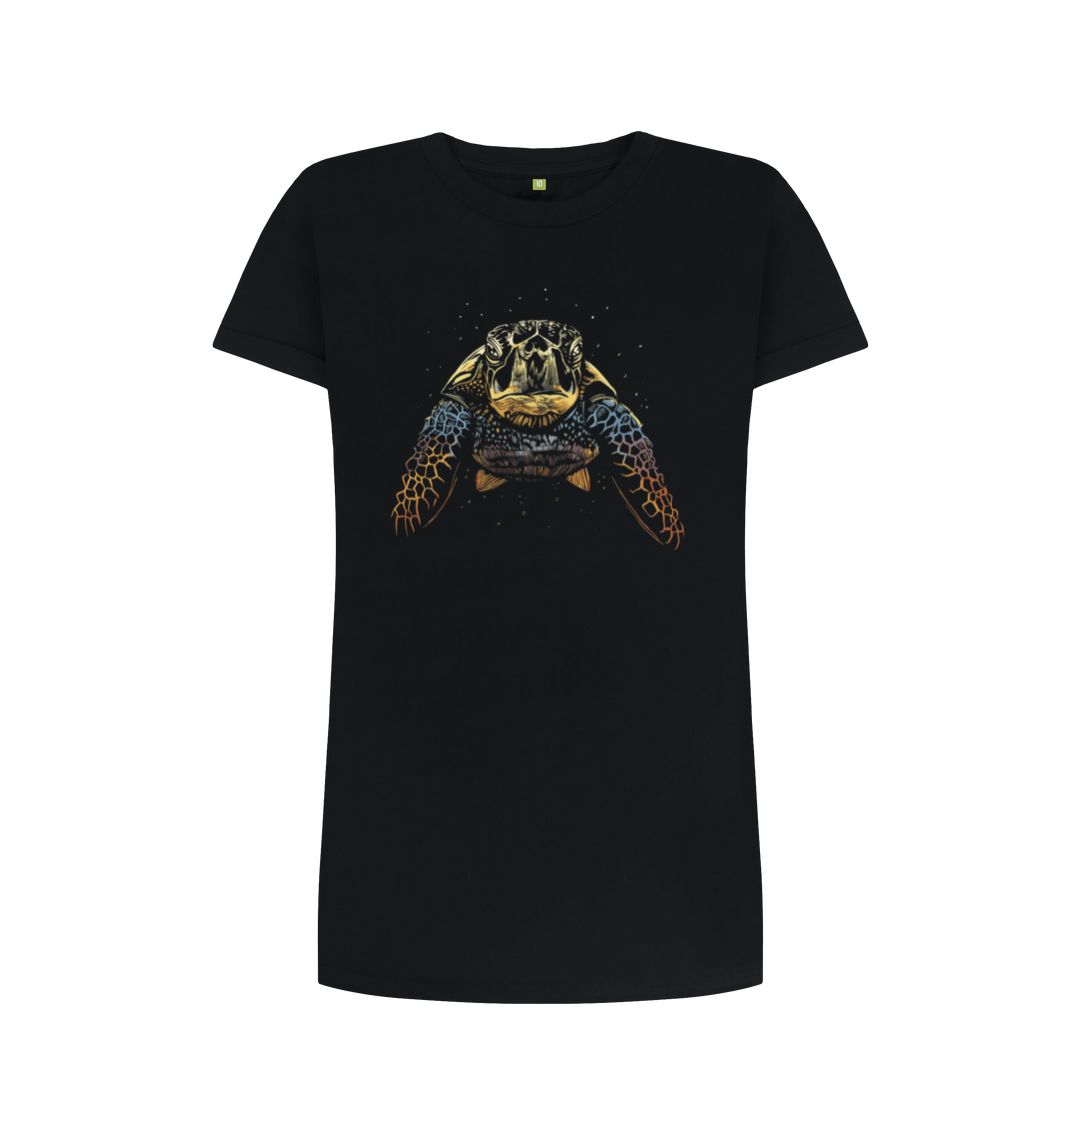 Black The Colour Turtle Women's T-Shirt Dress